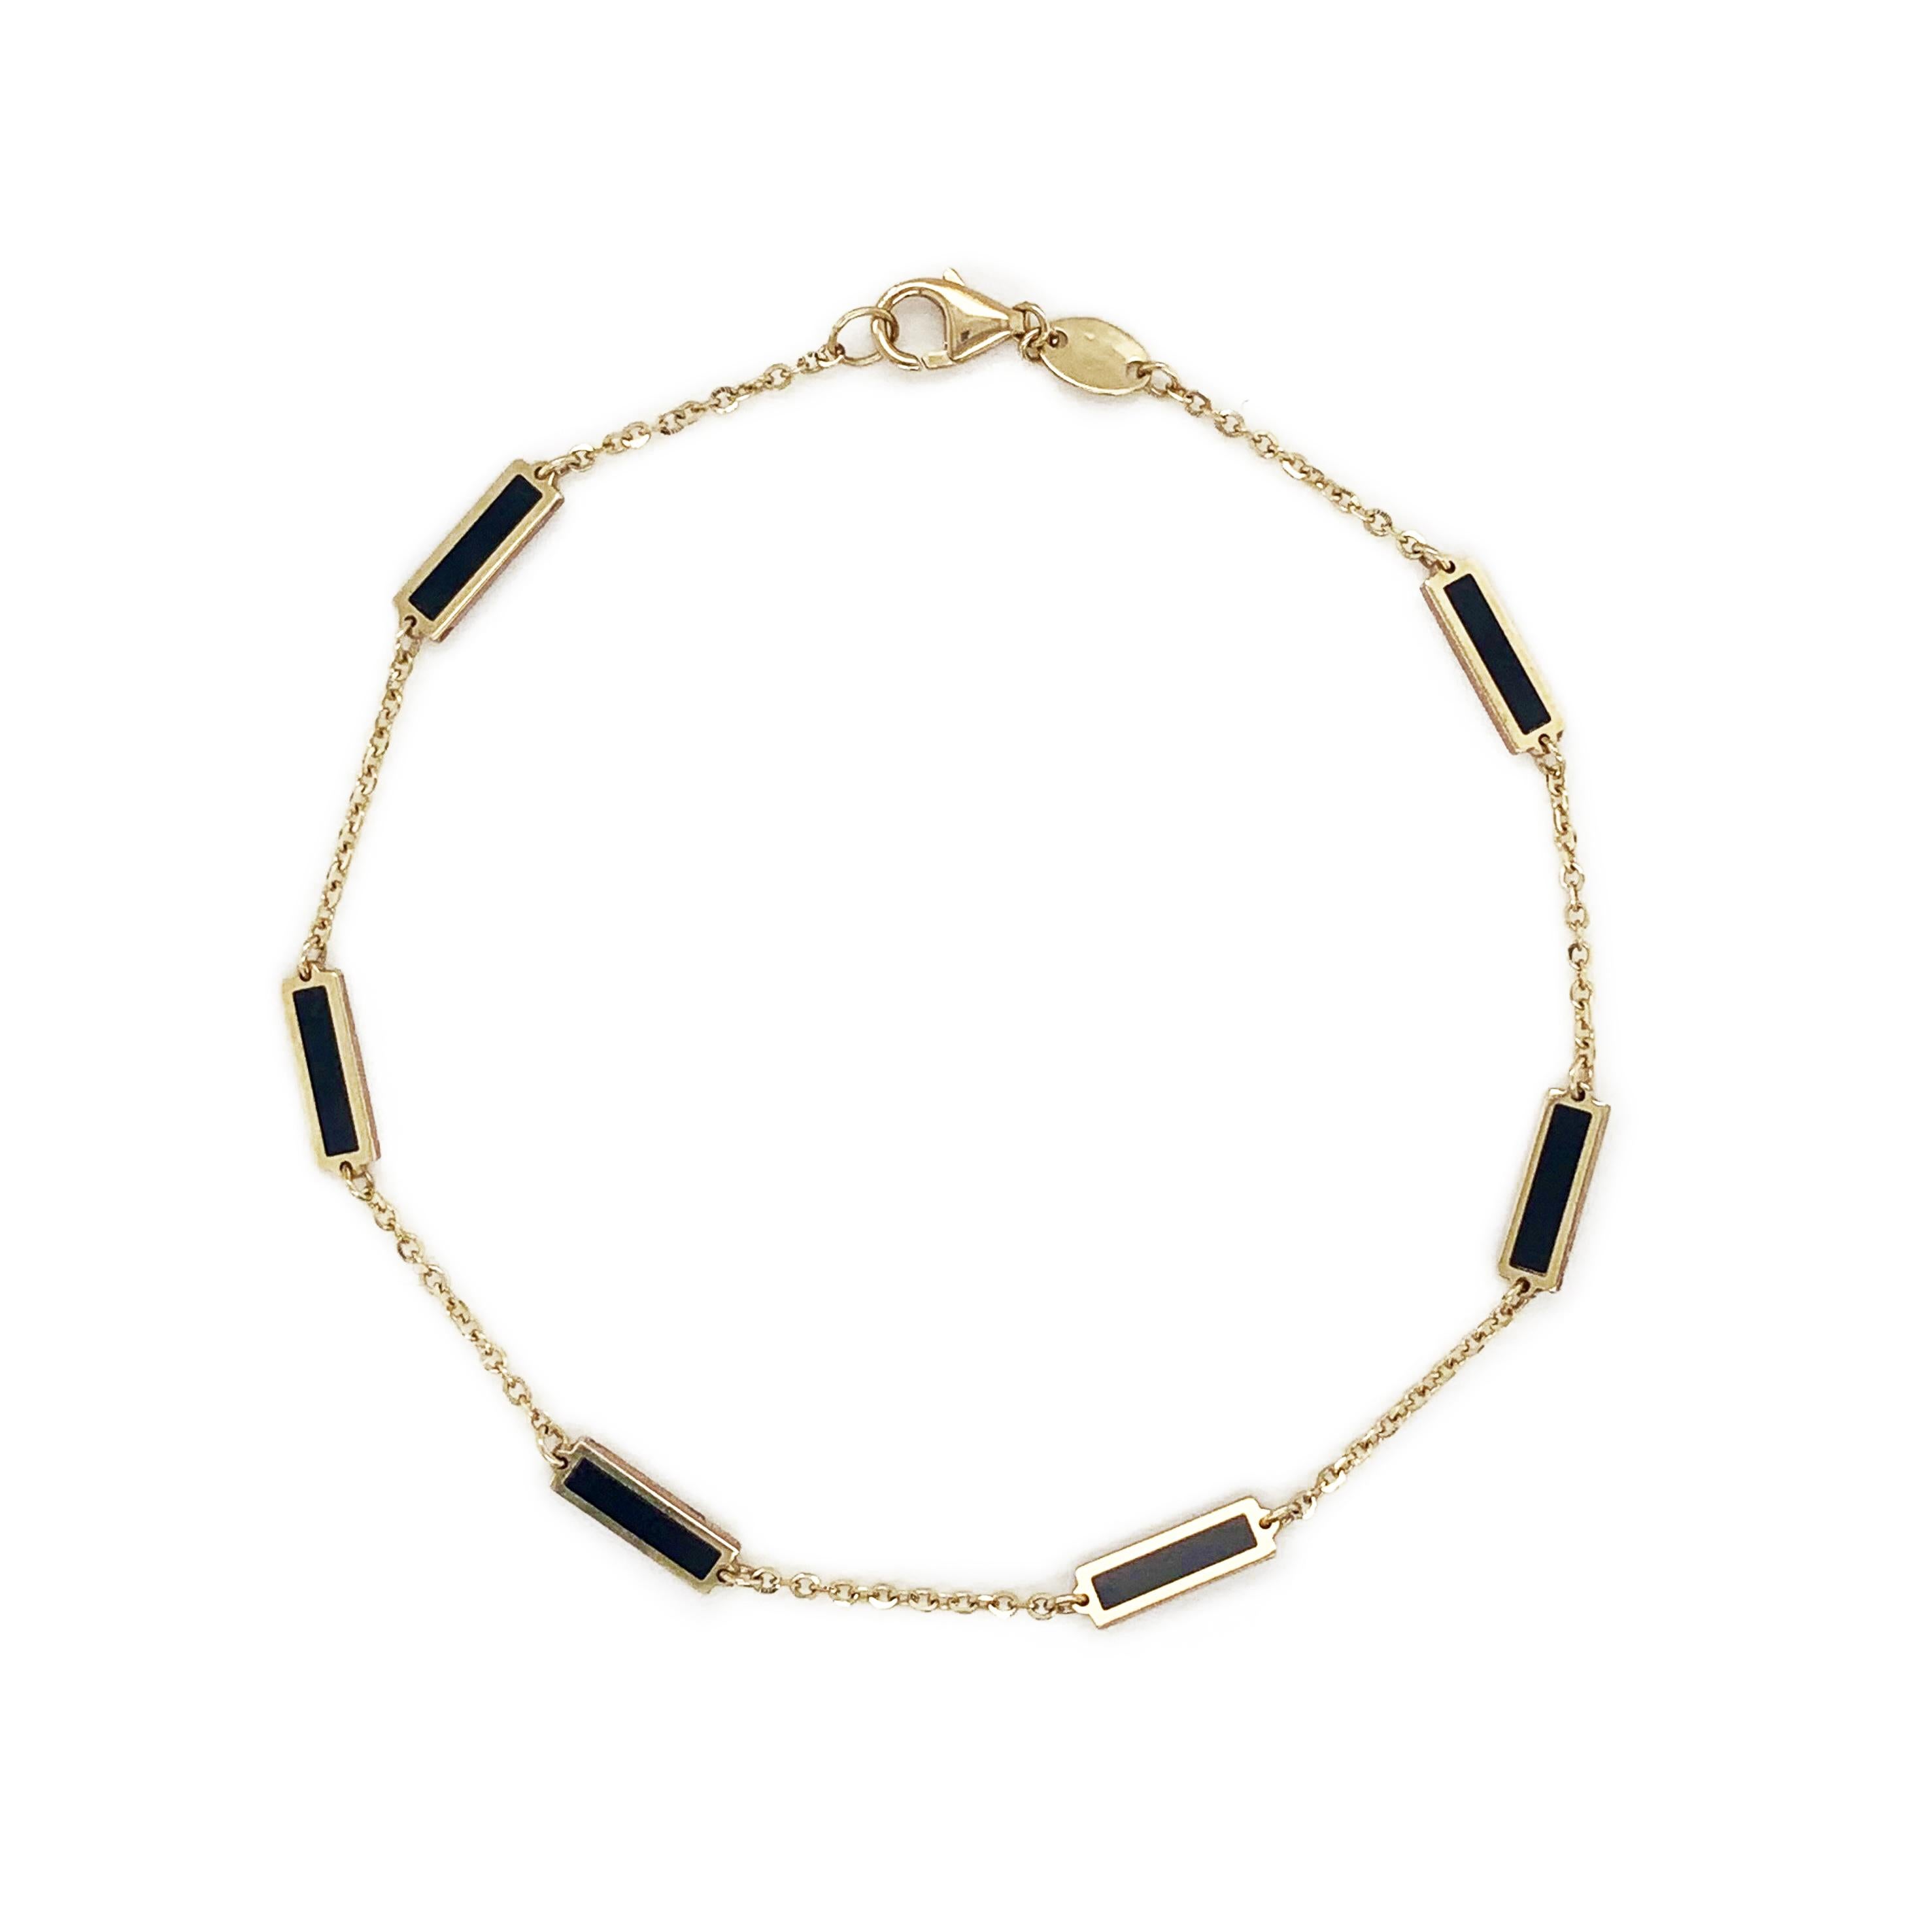 Bracelet de qualité en onyx : Axé sur le design et les détails, ce magnifique bracelet de pierres précieuses d'Onyx de votre choix présente un design de barre et est fabriqué en or jaune 14k. La mesure du bracelet est de 7